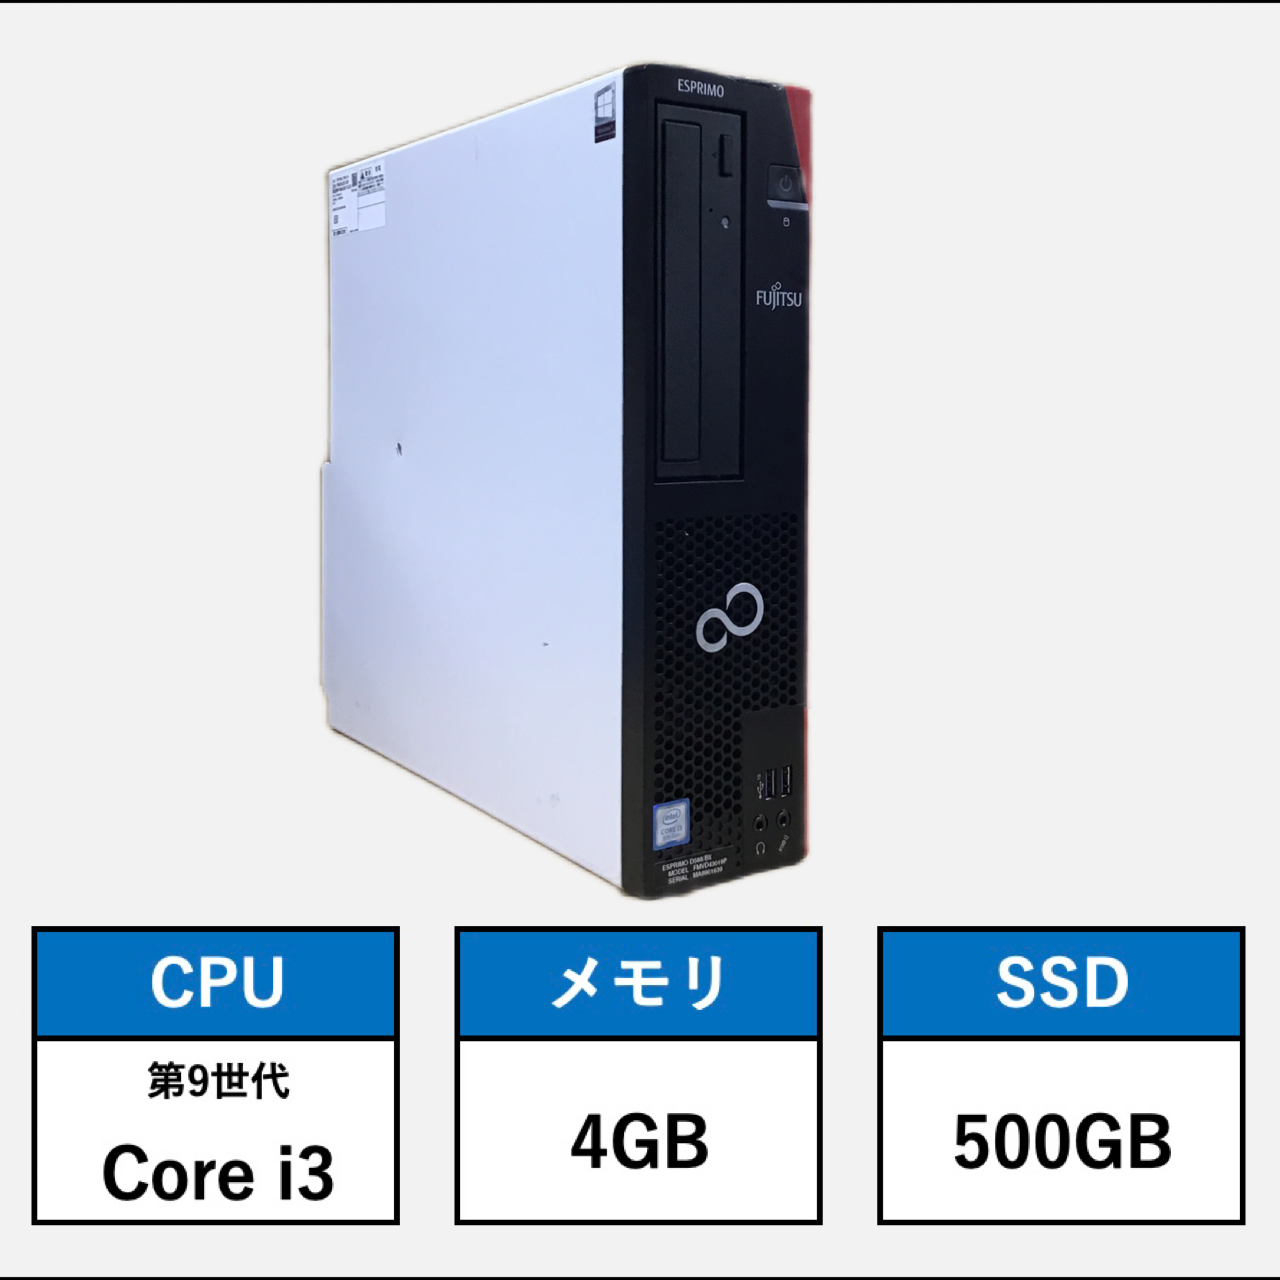 2099☆FUJITSU ESPRIMO D588/BX Core i3 9100 HDD/無 メモリ/4GB BIOS 